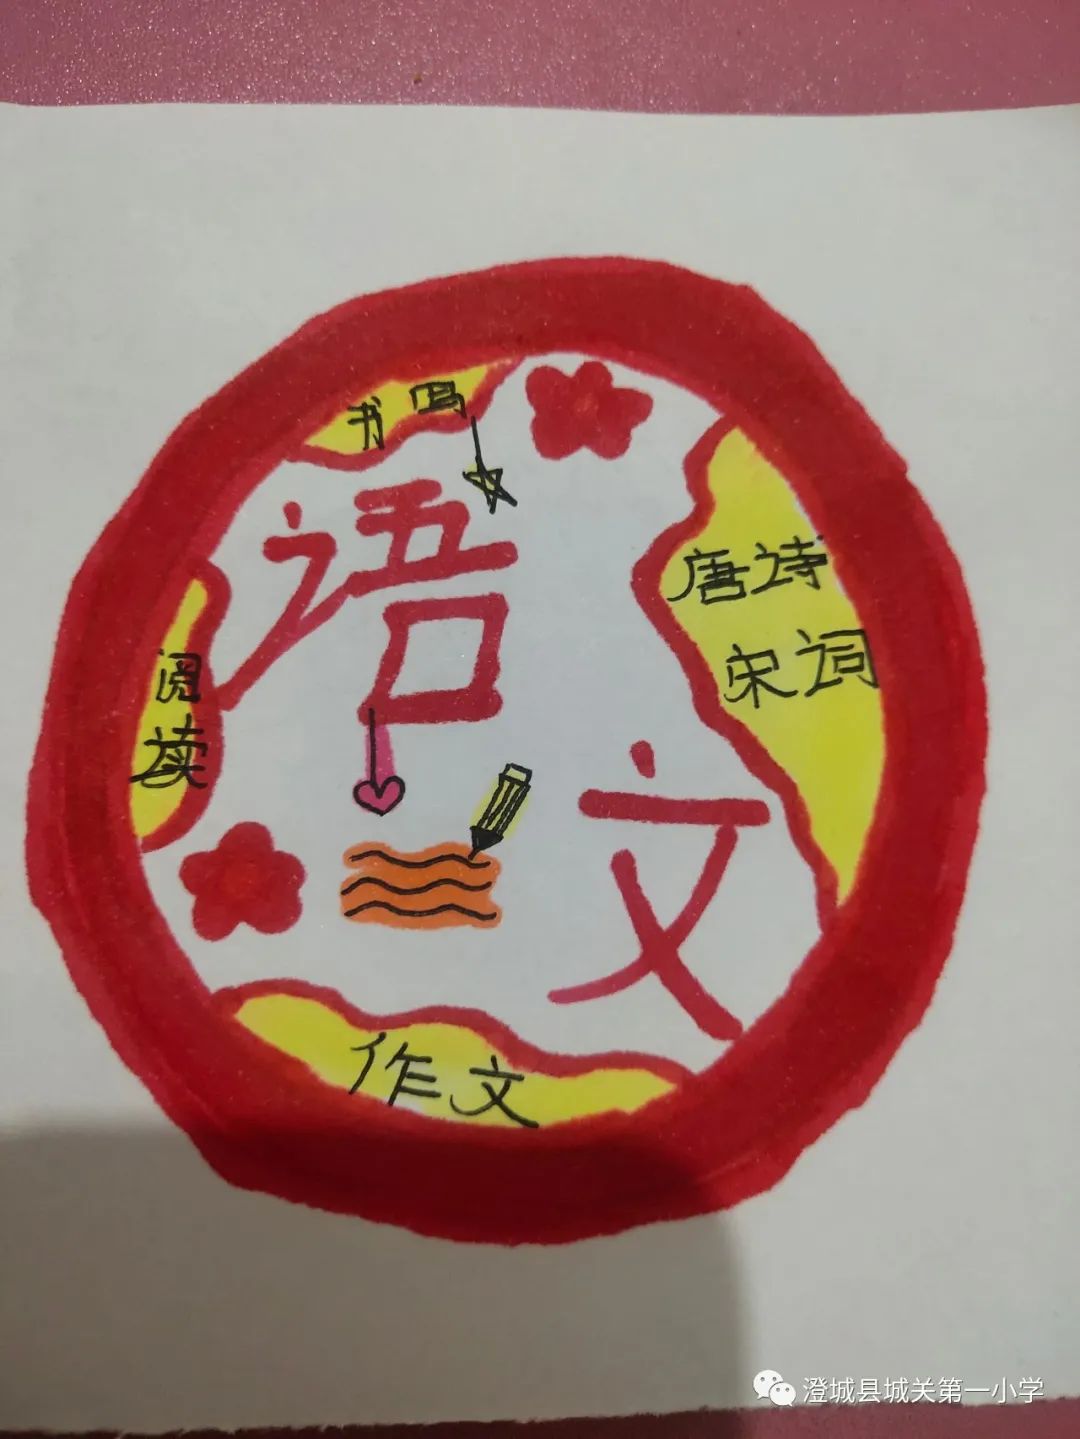 语文节徽标图片